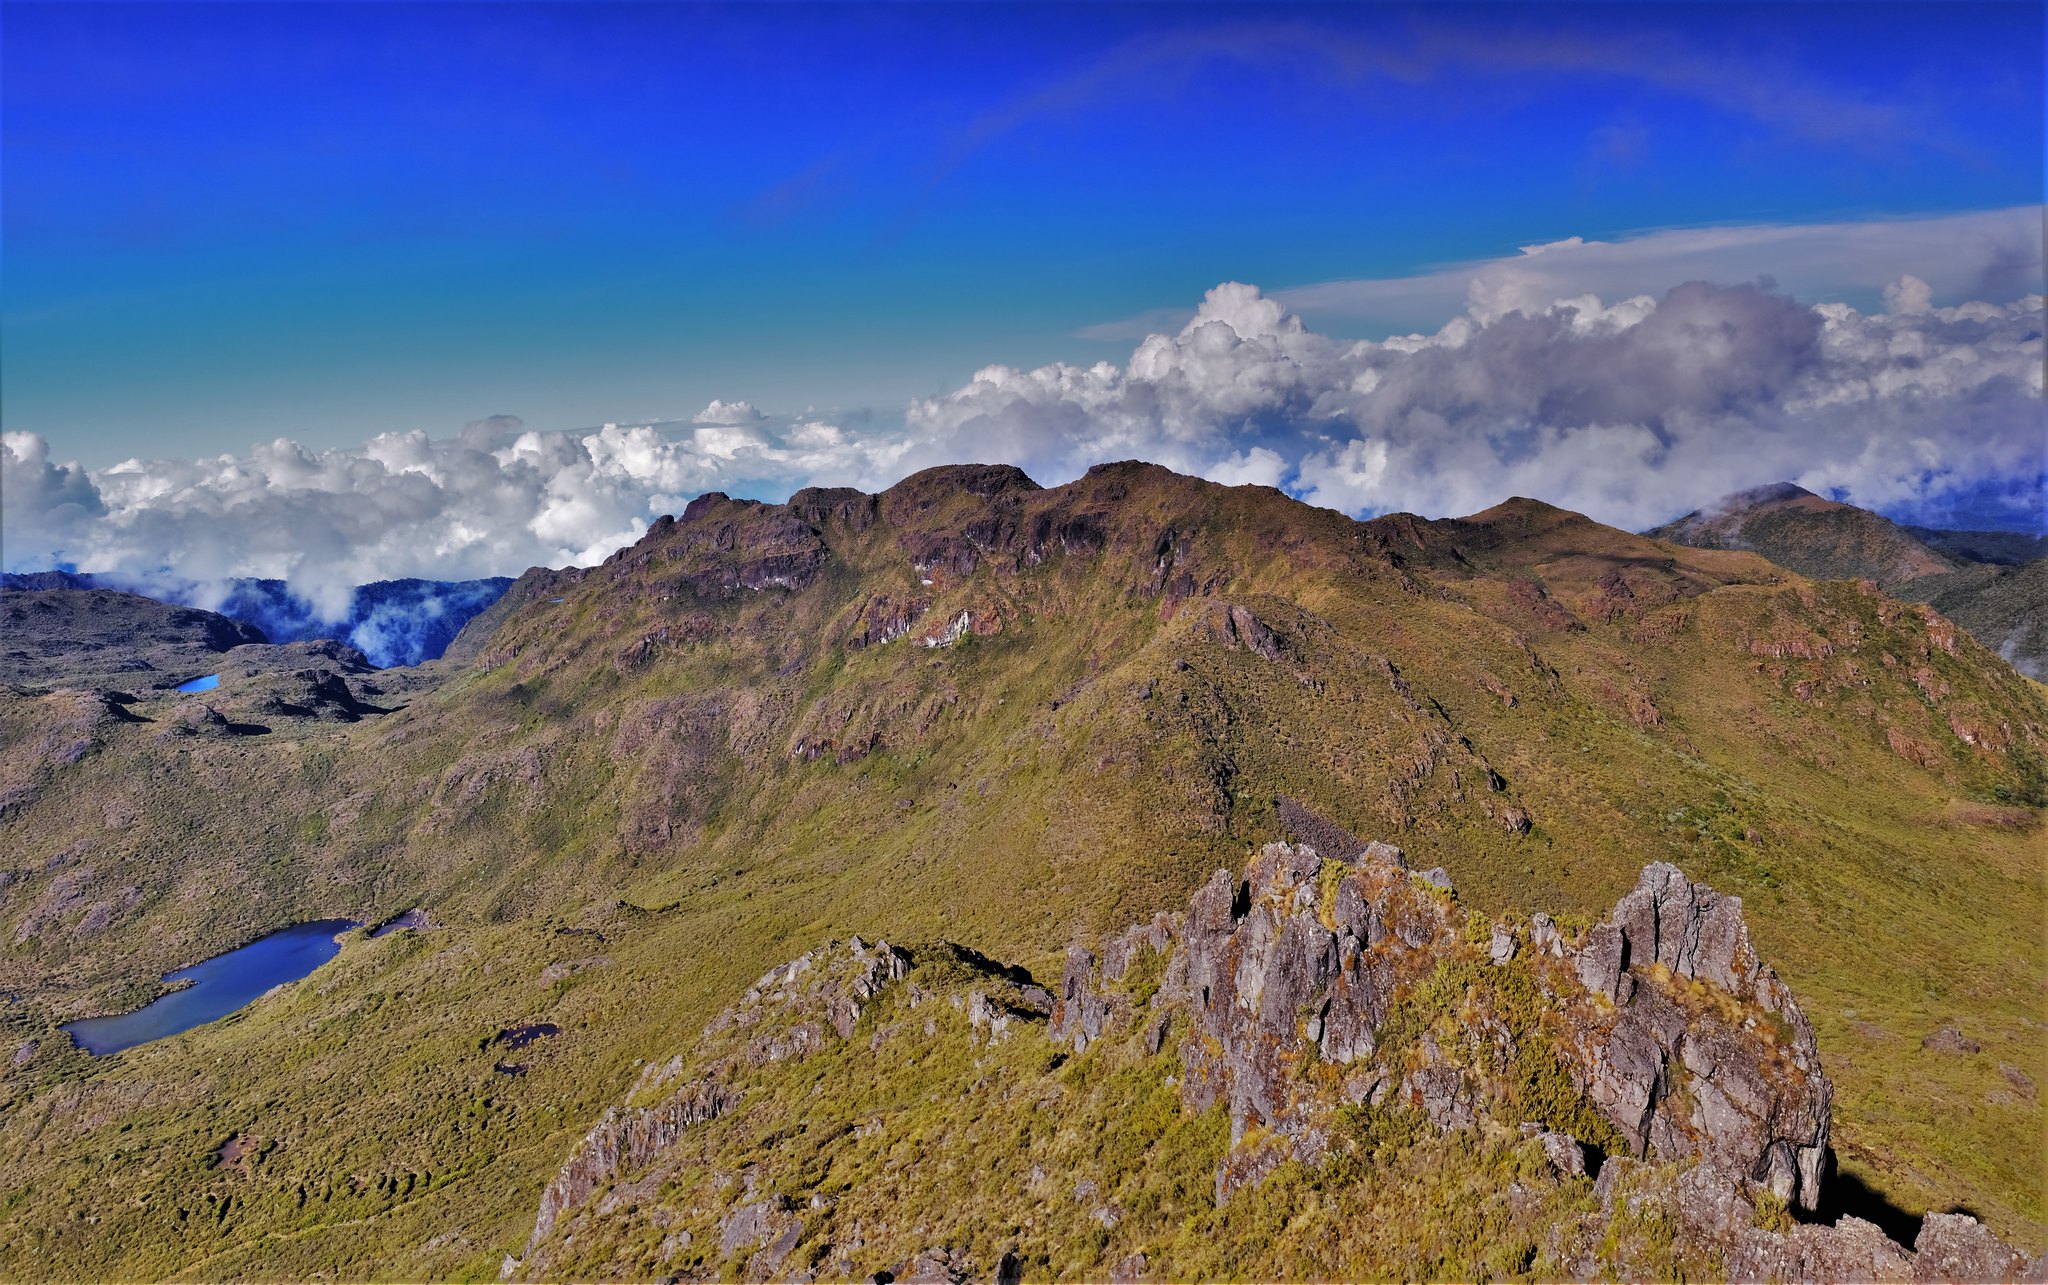 Rutas de senderismo en Costa Rica: Cerro Chirripó